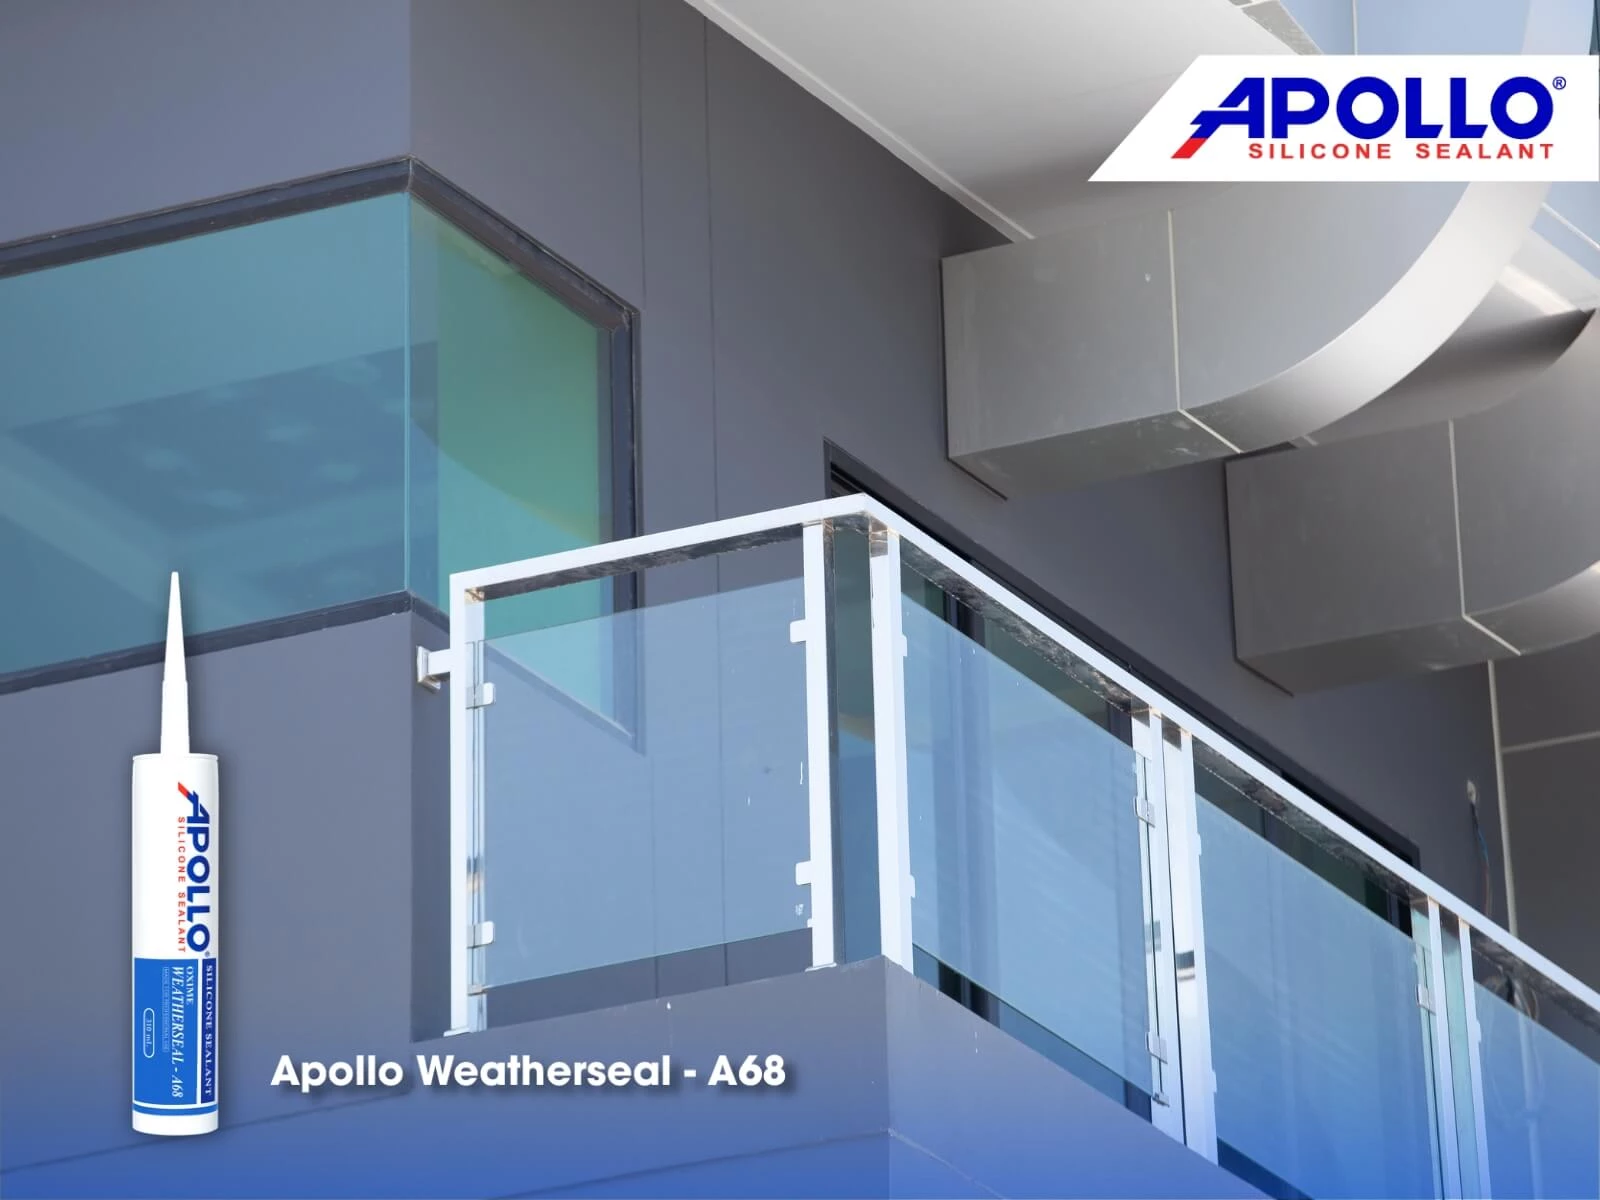 Apollo Weatherseal - A68 là chất keo chịu được mọi nhiệt độ thời tiết và các yếu tố tác động từ môi trường